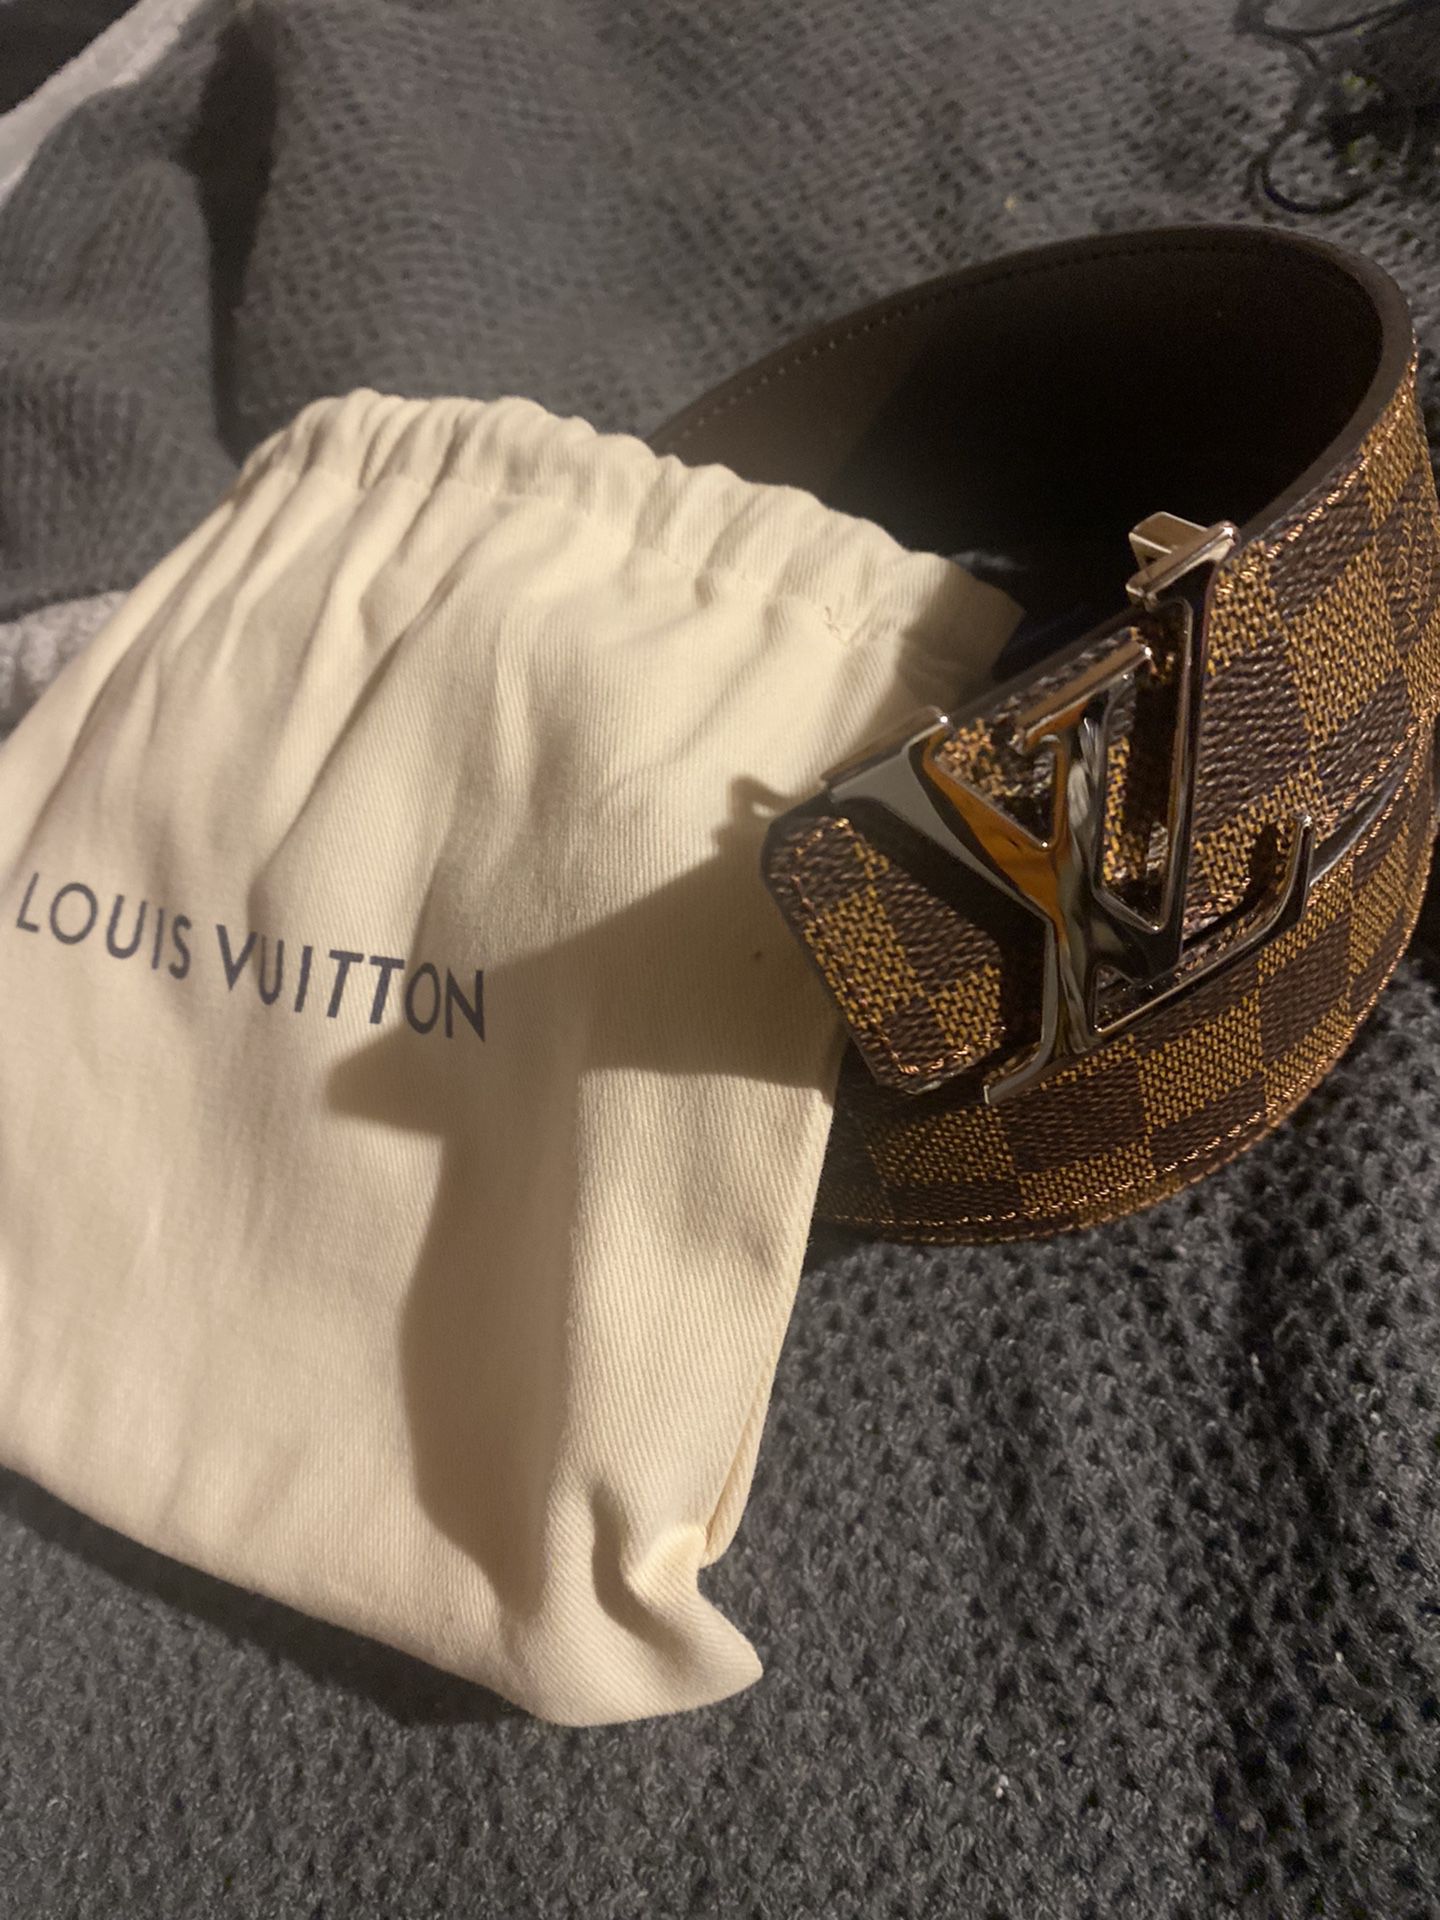 Louis Vuitton 90/36 Size Belt (1 1/2” Width) SALE PENDING for Sale in  Seattle, WA - OfferUp